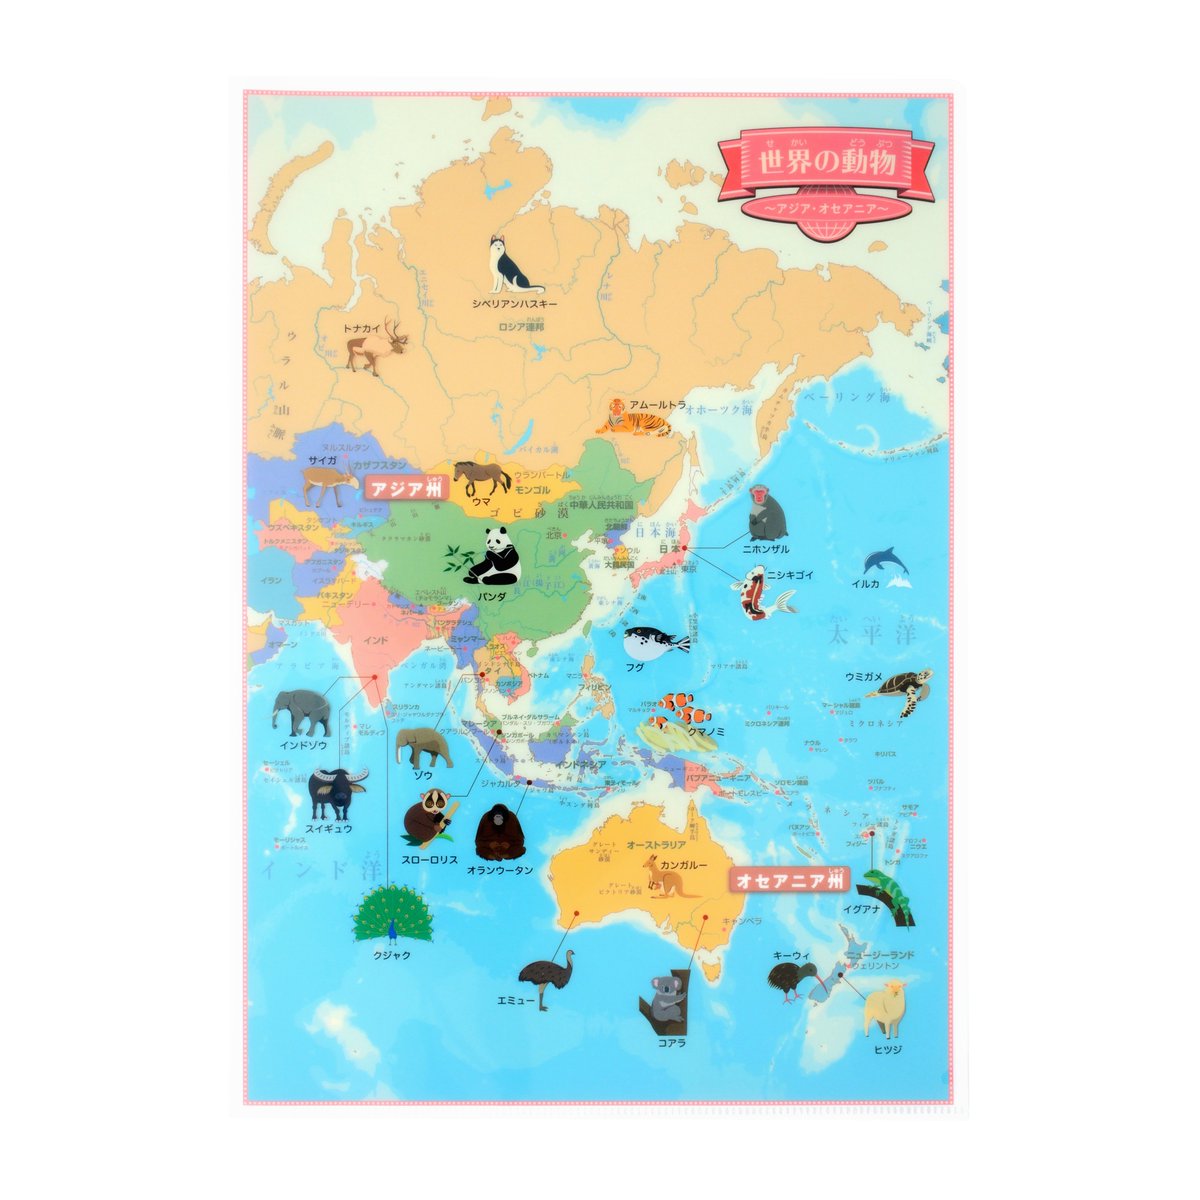 東京カートグラフィック 世界の動物のかわいいイラストが載っている本格的な世界地図クリアファイルを販売しています ヨーロッパ アフリカ アジア オセアニア 南北アメリカ ヨーロッパ 拡大 の4枚セットです T Co Un3ou6auex 他にも名所